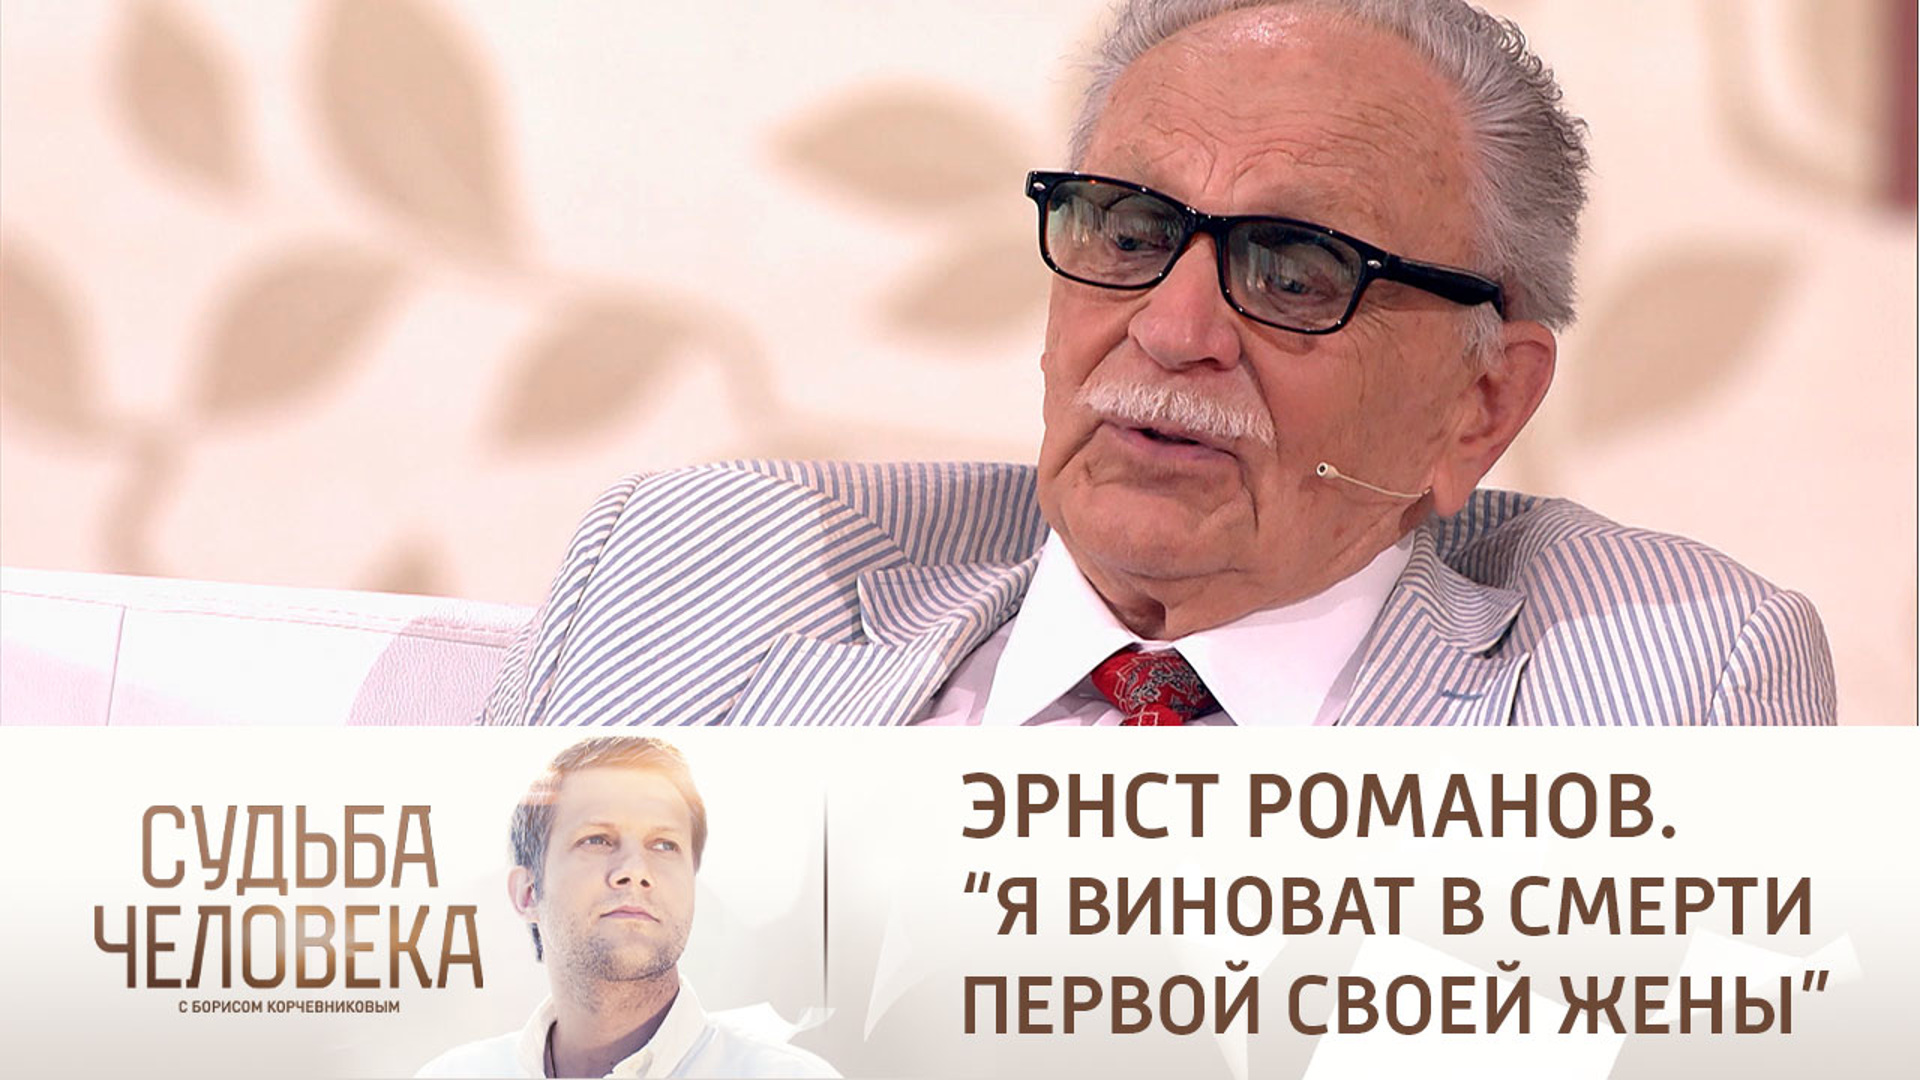 Судьба человека с Борисом Корчевниковым сегодняшний выпуск от28 07 2021